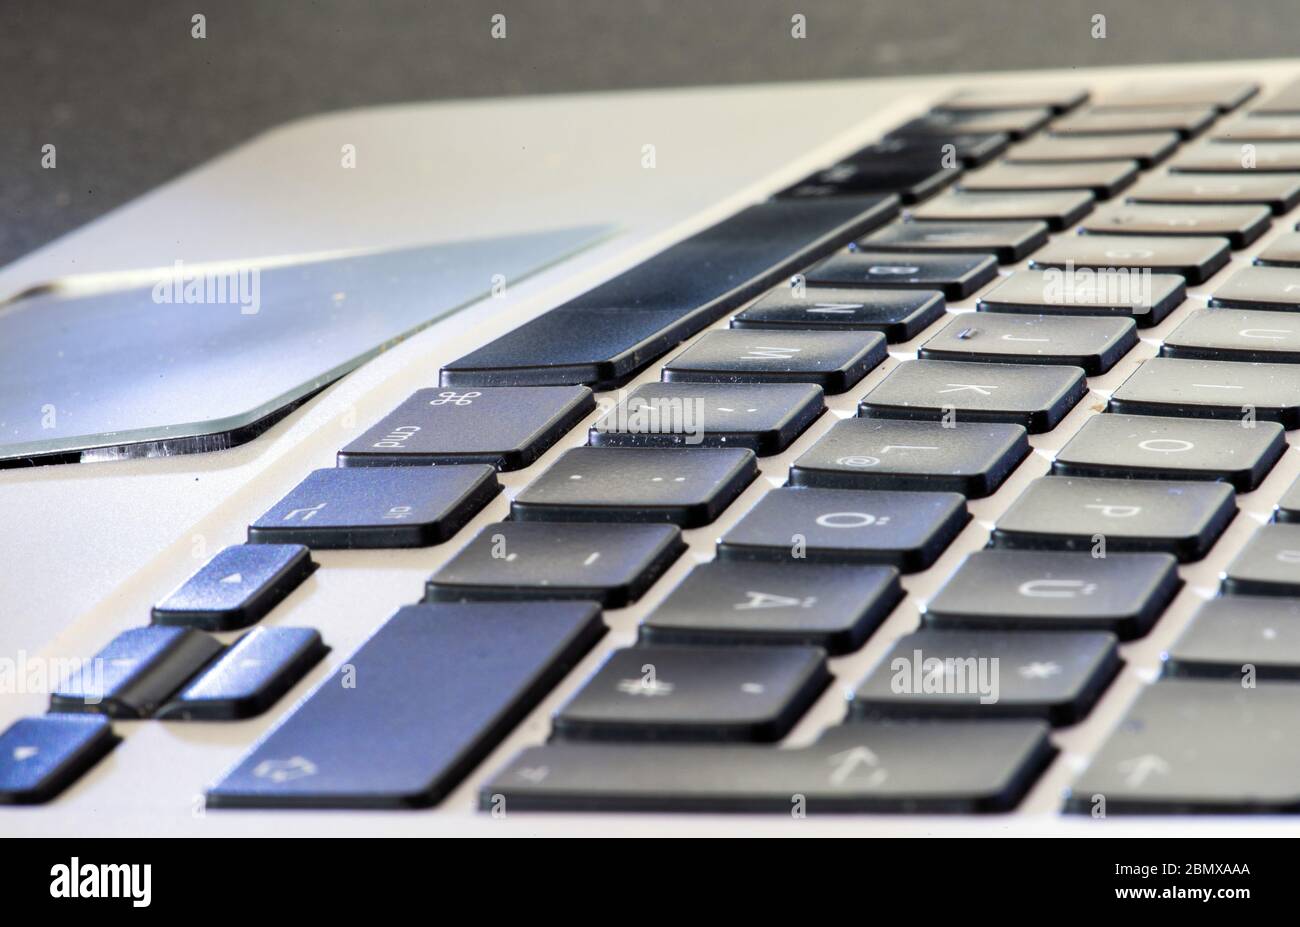 26 de abril de 2020, Berlín: Un MacBook Air (año de fabricación 2011) con  una pantalla de 11 pulgadas se encuentra sobre una mesa. La batería inflada  ha separado el panel táctil